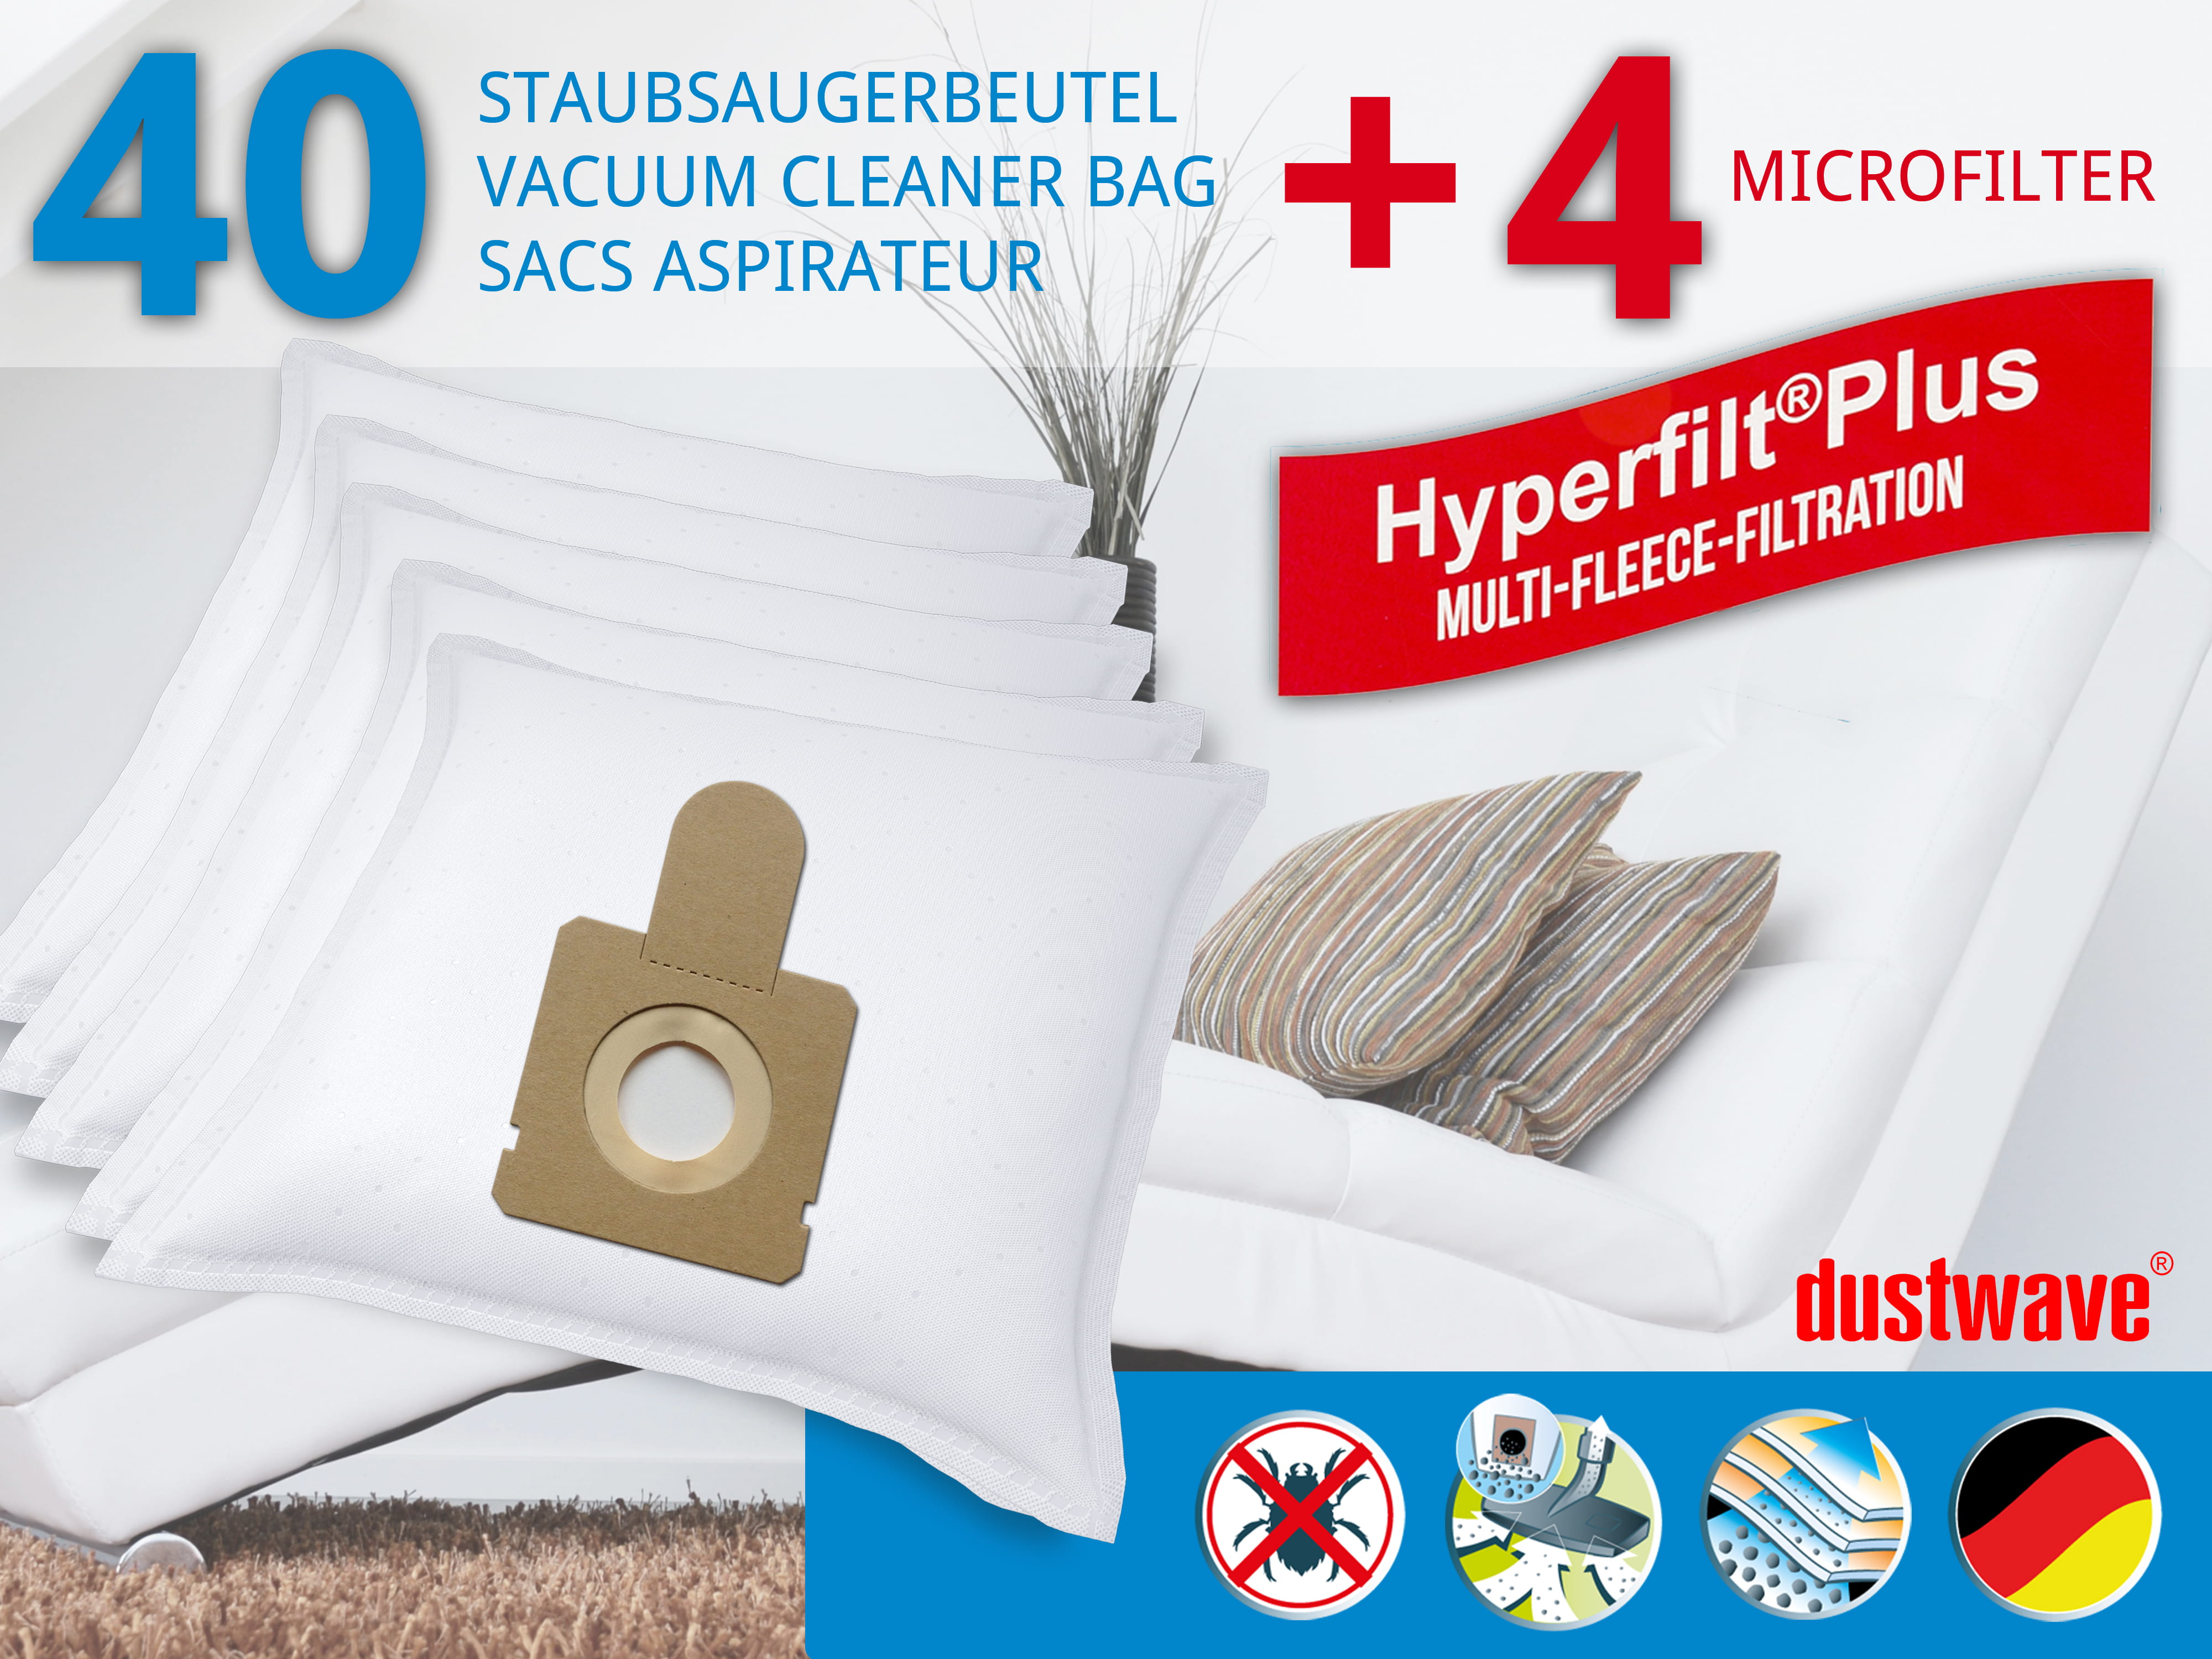 Dustwave® 40 Staubsaugerbeutel für Hoover TFP 1215 FreeSpace Evo - hocheffizient, mehrlagiges Mikrovlies mit Hygieneverschluss - Made in Germany